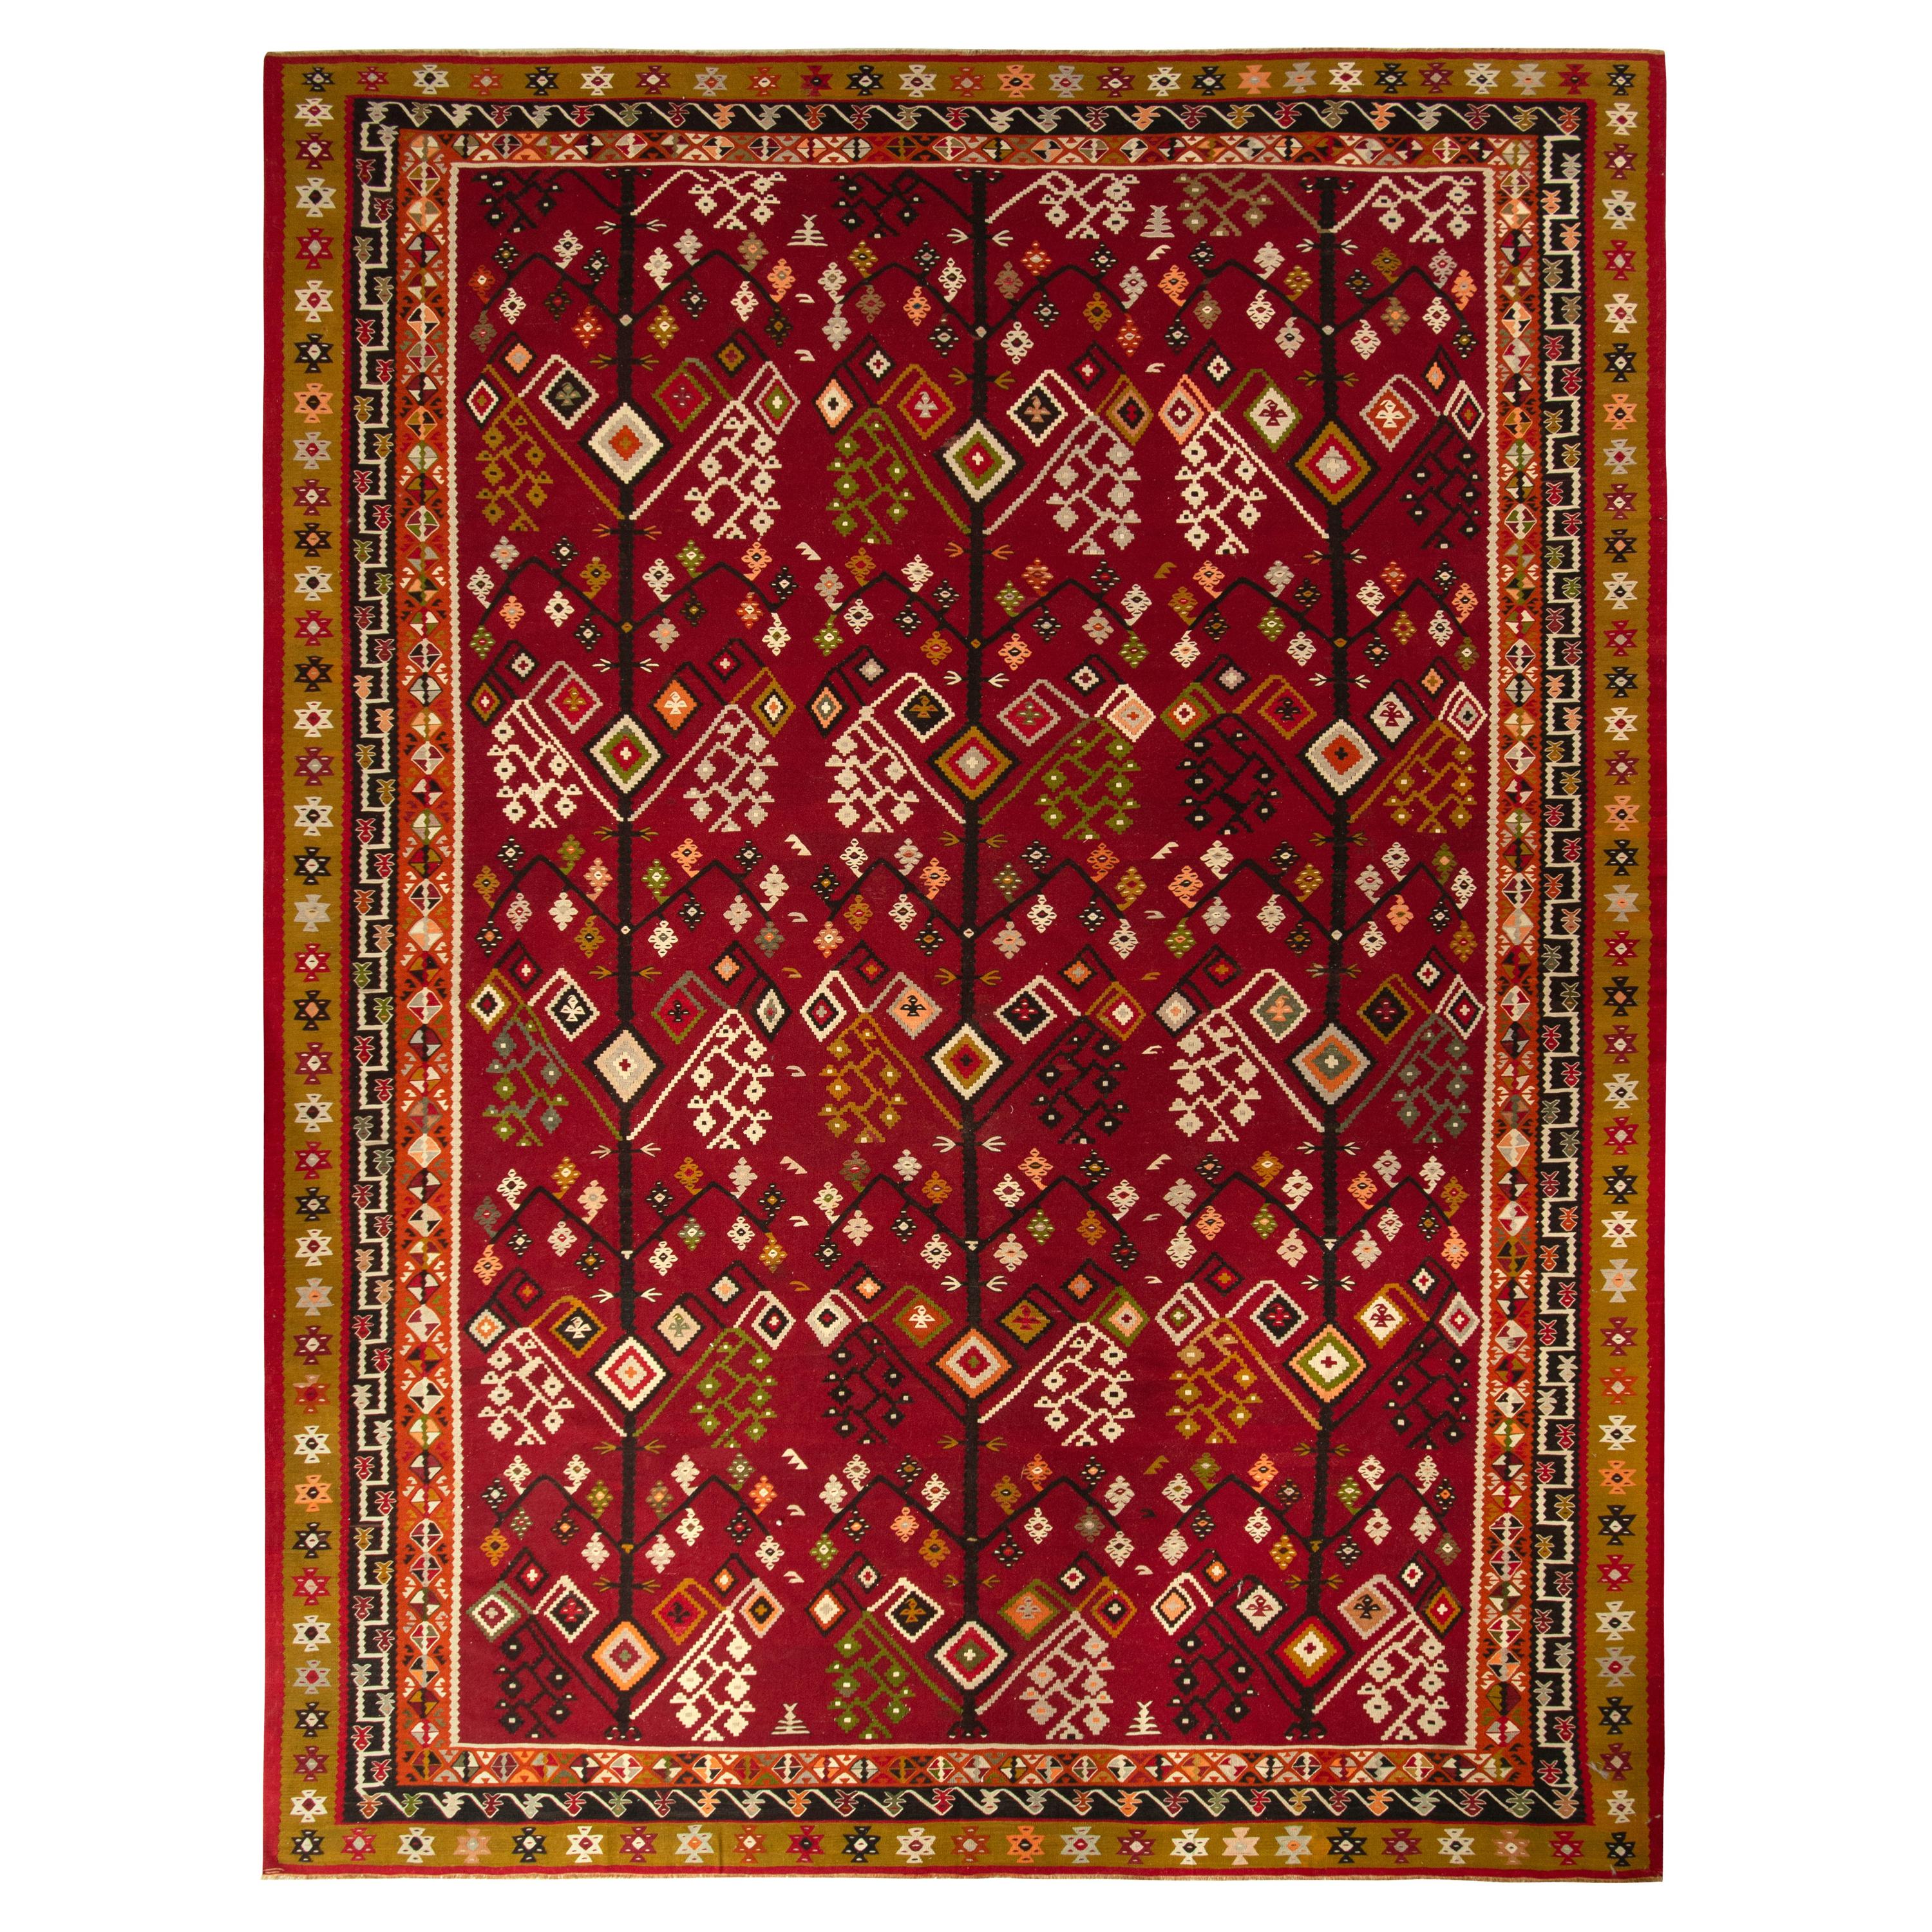 Handgewebter Vintage-Kelim-Teppich in Rot und Gold mit geometrischem Muster von Teppich & Kelim